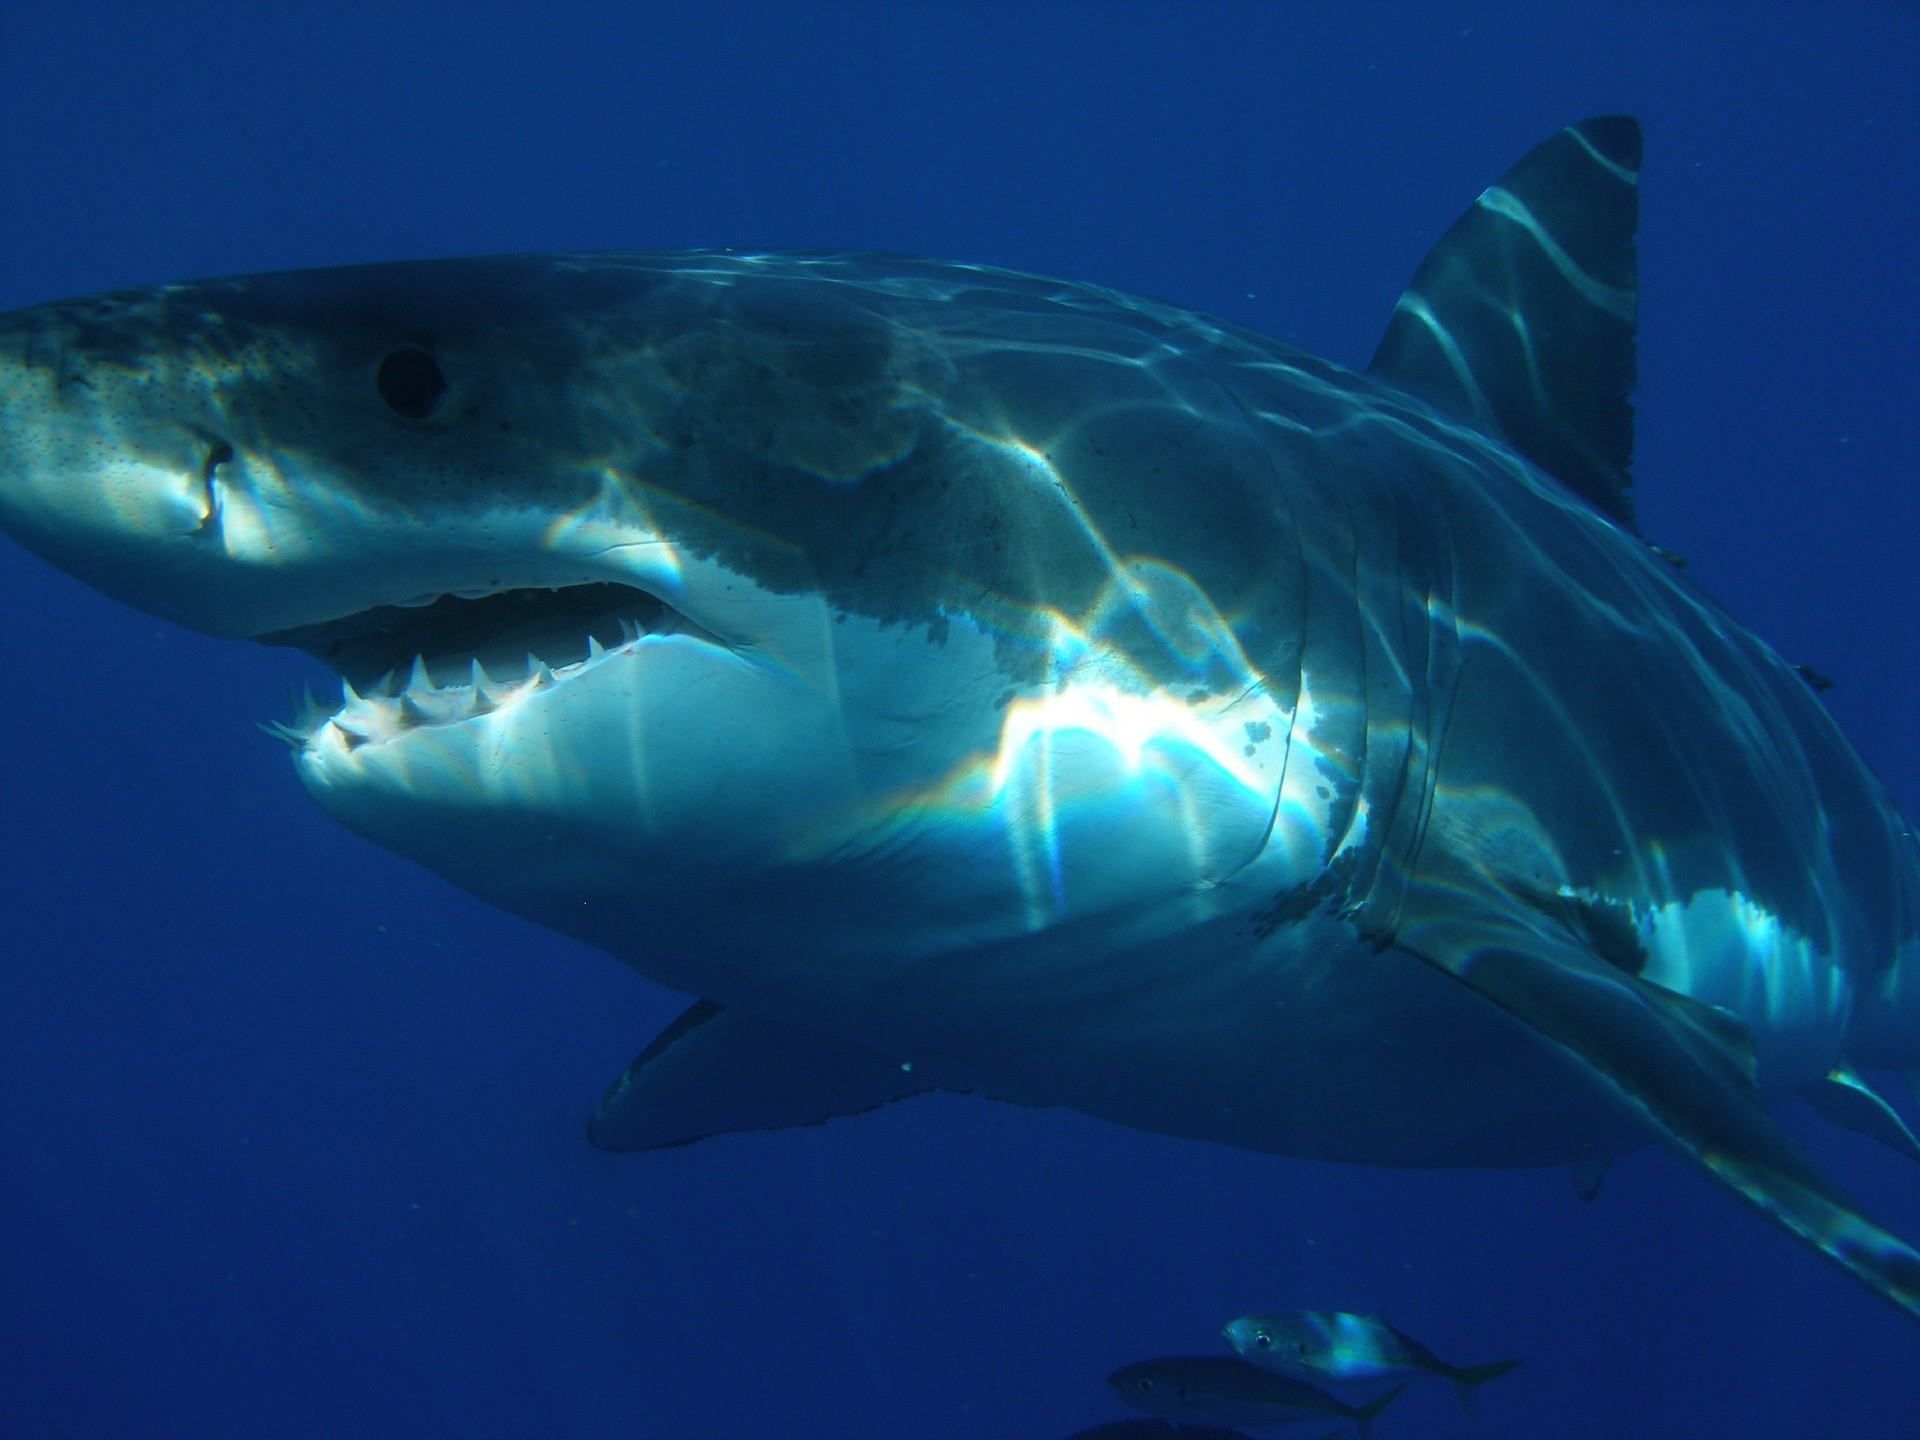 Site de apostas inova, cria 'corrida' de tubarões e surpreende organização que rastreia os animais thumbnail